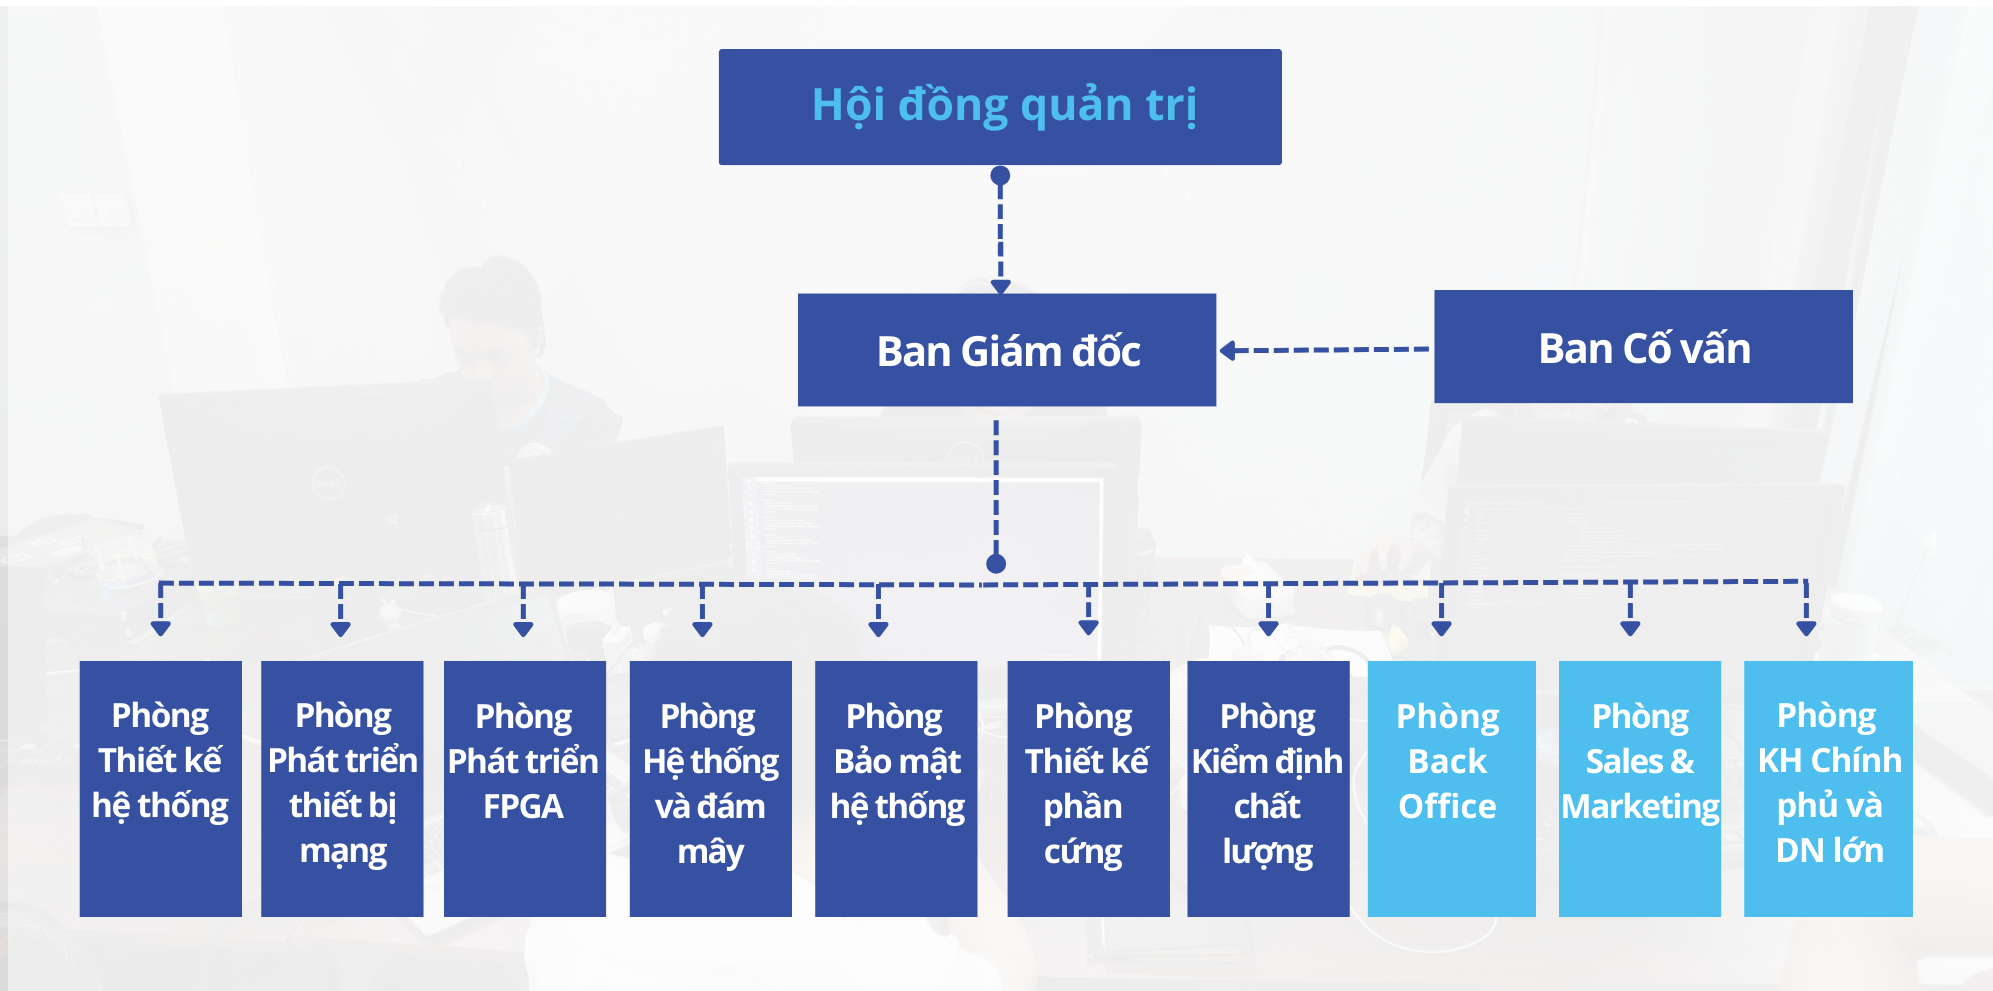 Lancs Networks bo may hanh chinh